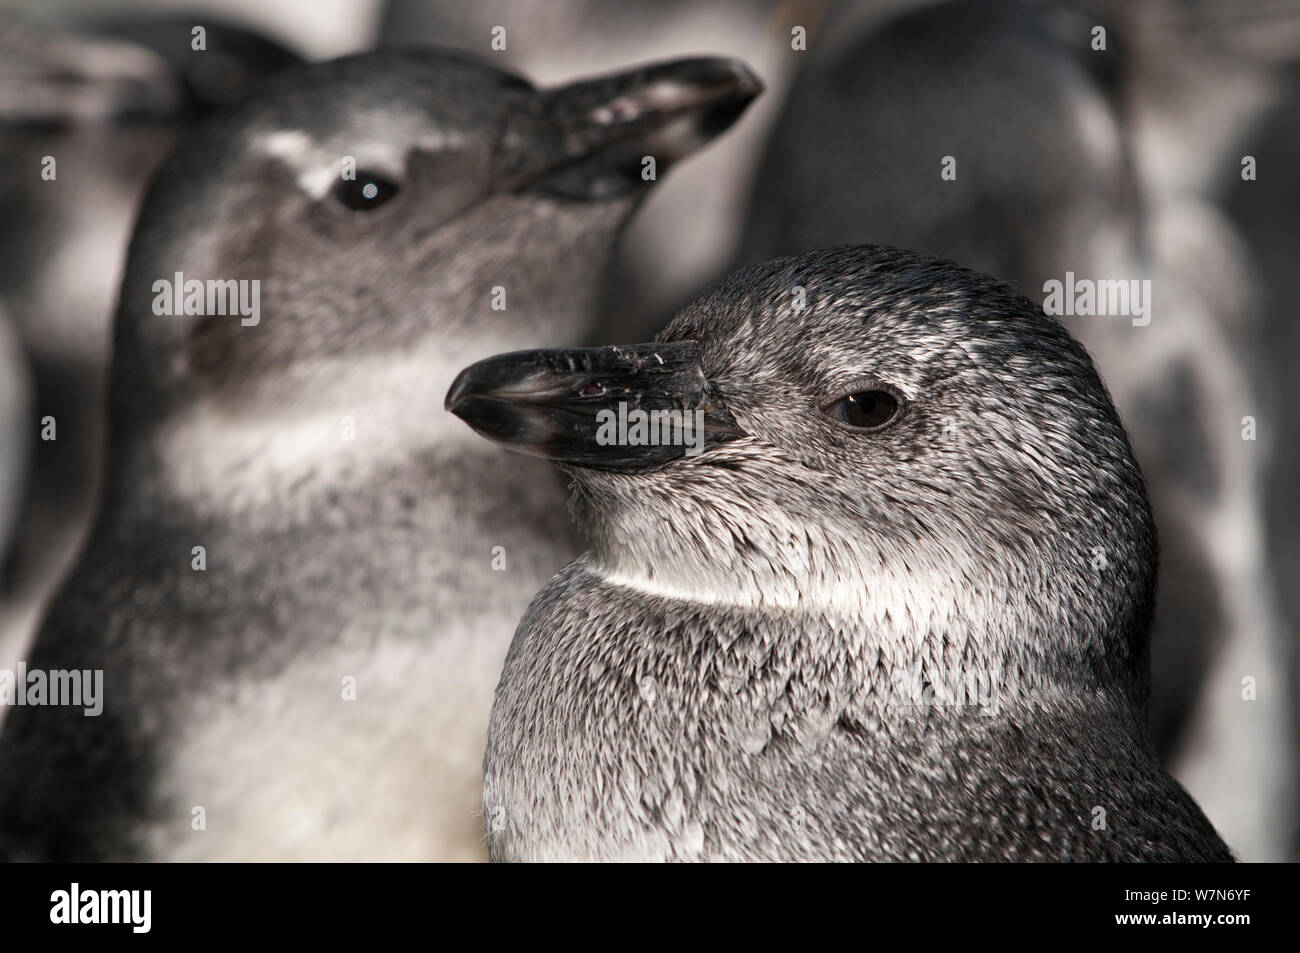 Black footed Penguin (Spheniscus demersus) Pinguine in diesem jugendlichen Bühne bekannt als "Blau", bevor nach federkleid wächst, Rehabilitation in der Südafrikanischen Stiftung für die Erhaltung der Küstenvögel (SANCCOB), Kapstadt, Südafrika Stockfoto